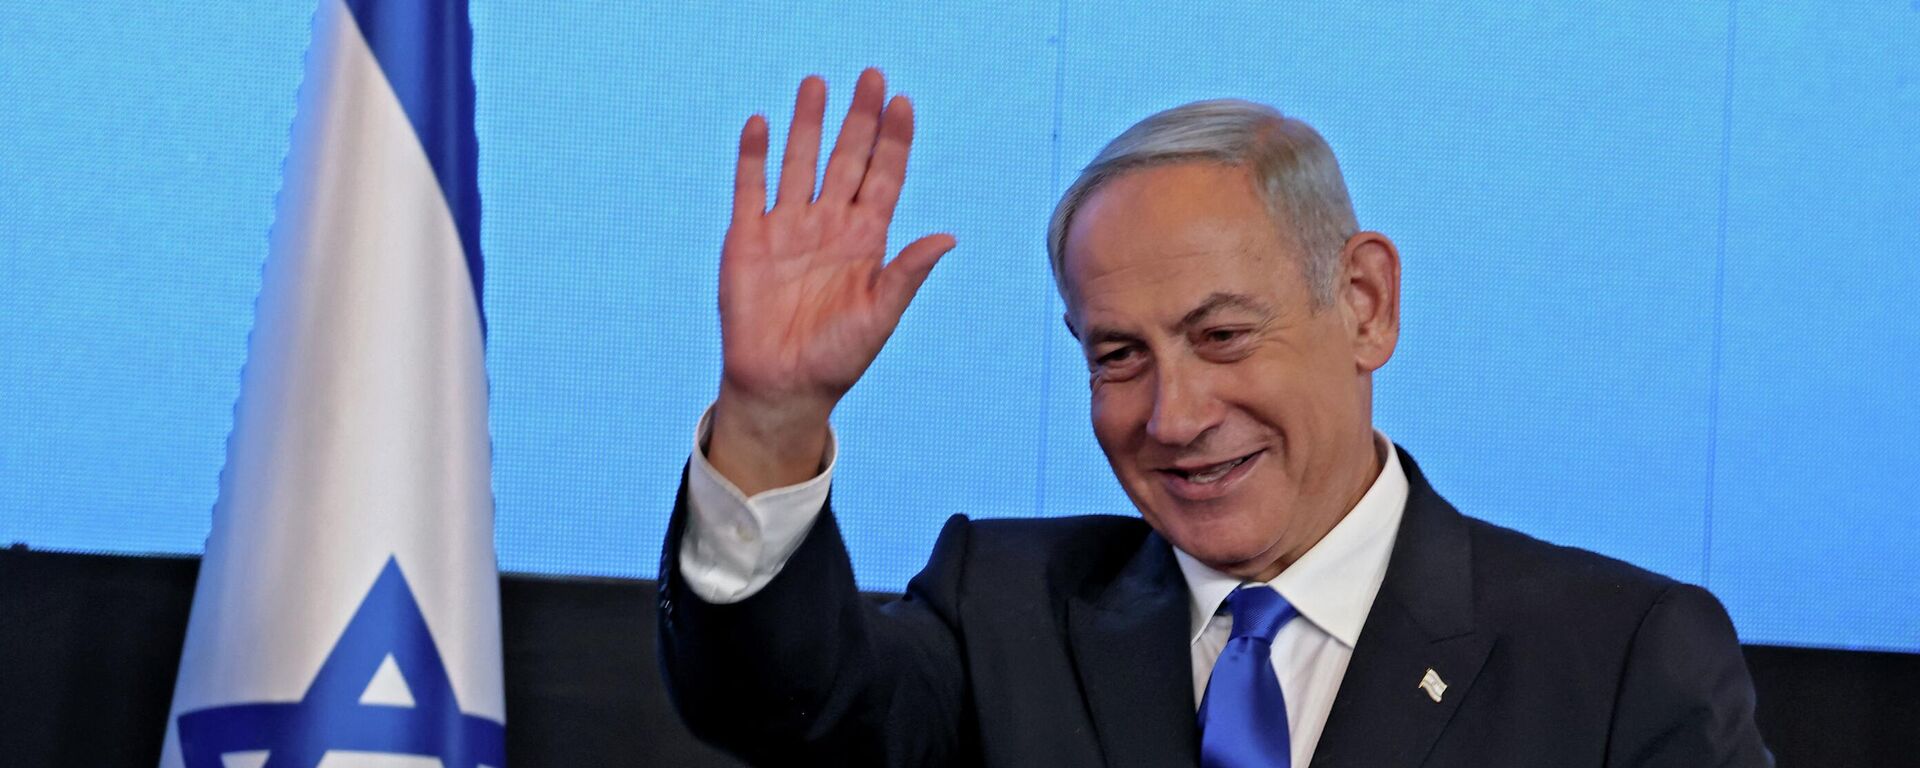 زعيم المعارضة الإسرائيلية بنيامين نتنياهو بعد فوزه في الانتخابات العامة في إسرائيل، نوفمبر/ تشرين الثاني 2022. - سبوتنيك عربي, 1920, 29.08.2023